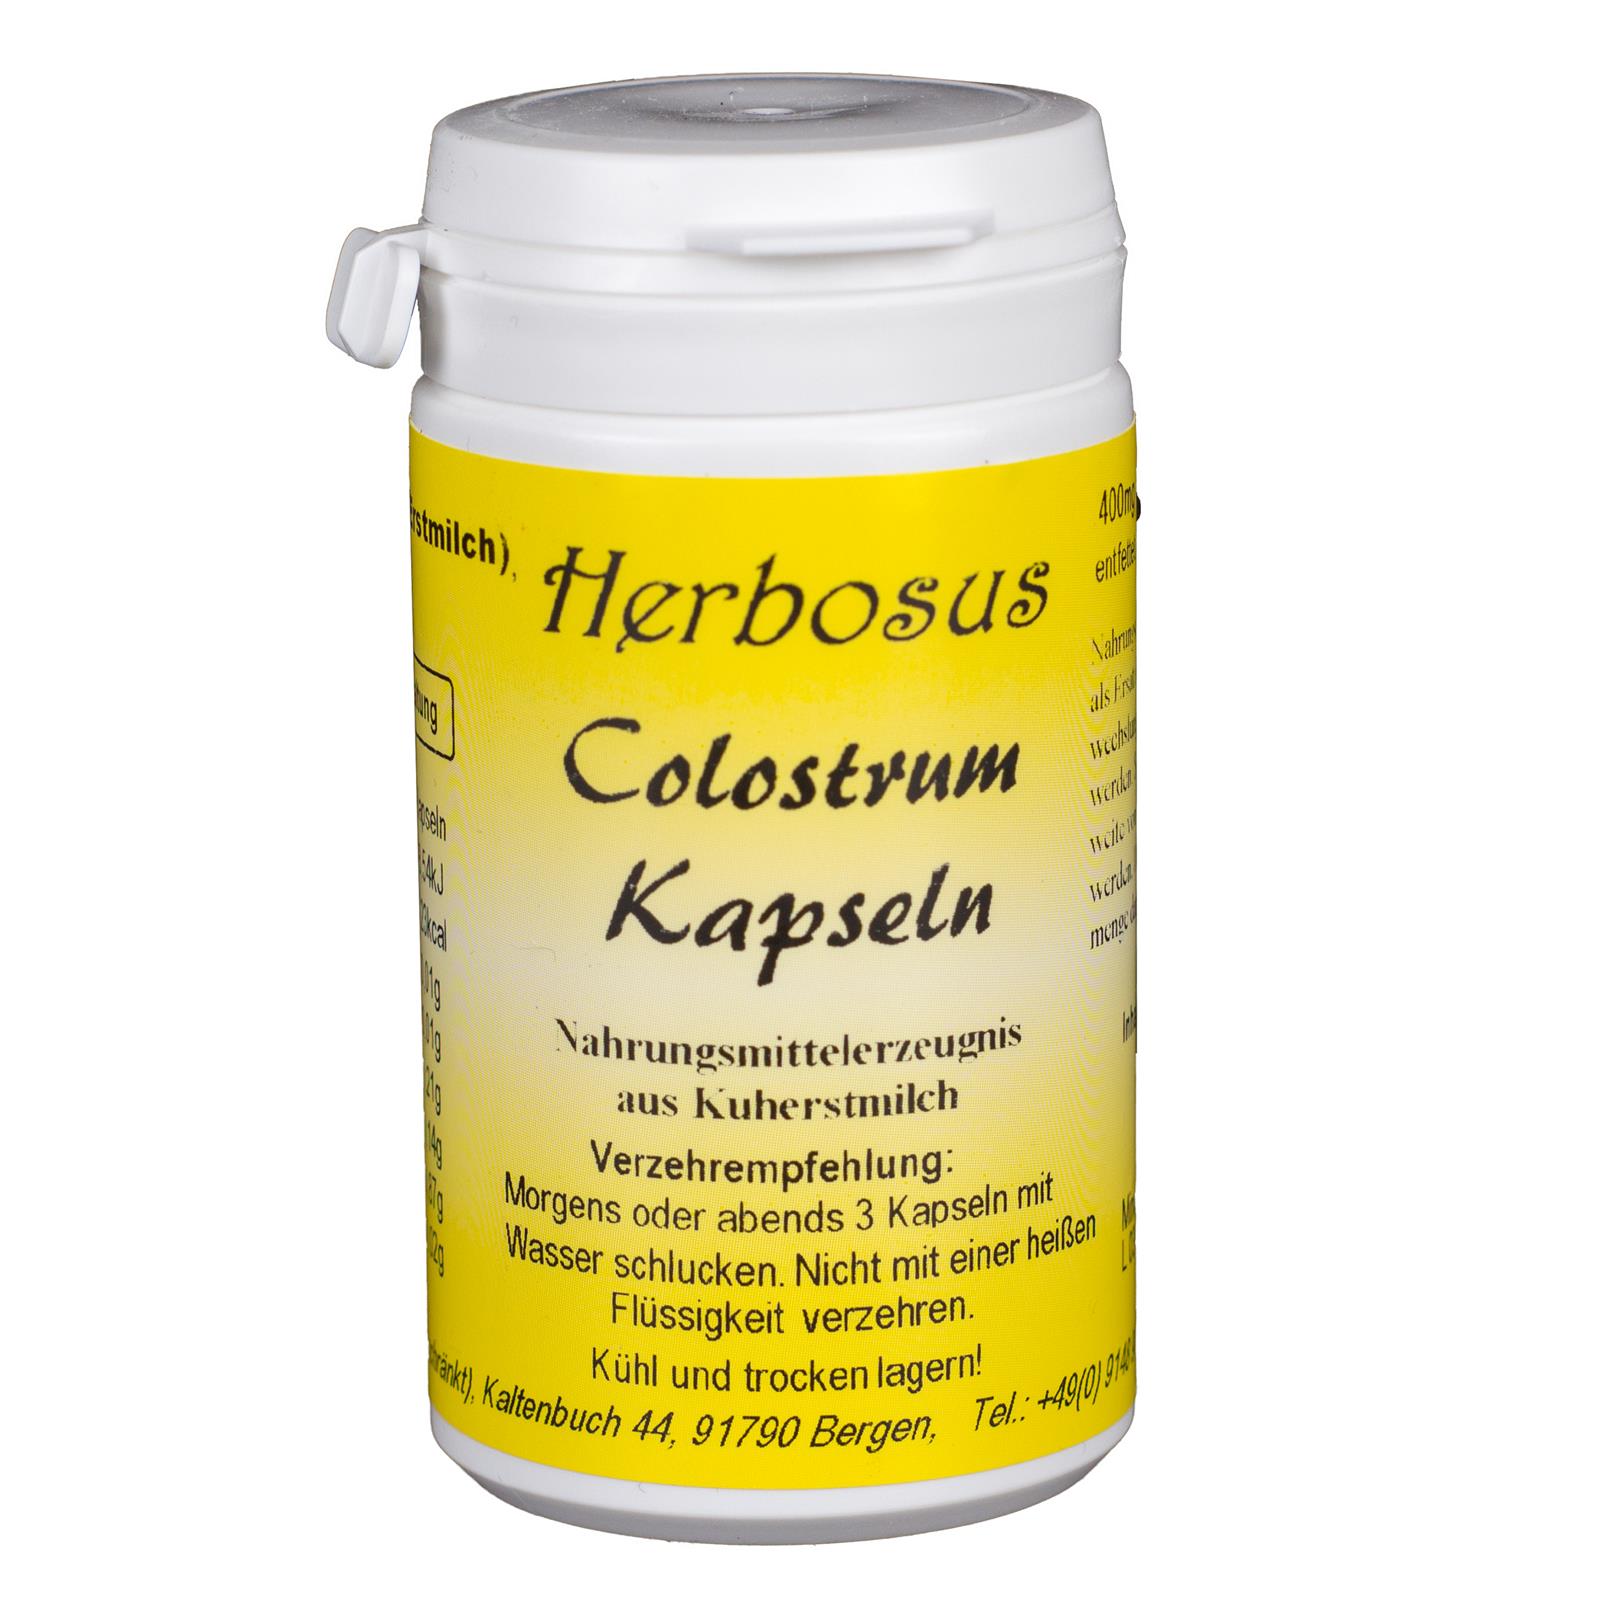 Colostrum Kapseln aus Kuherstmilch von Herbosus